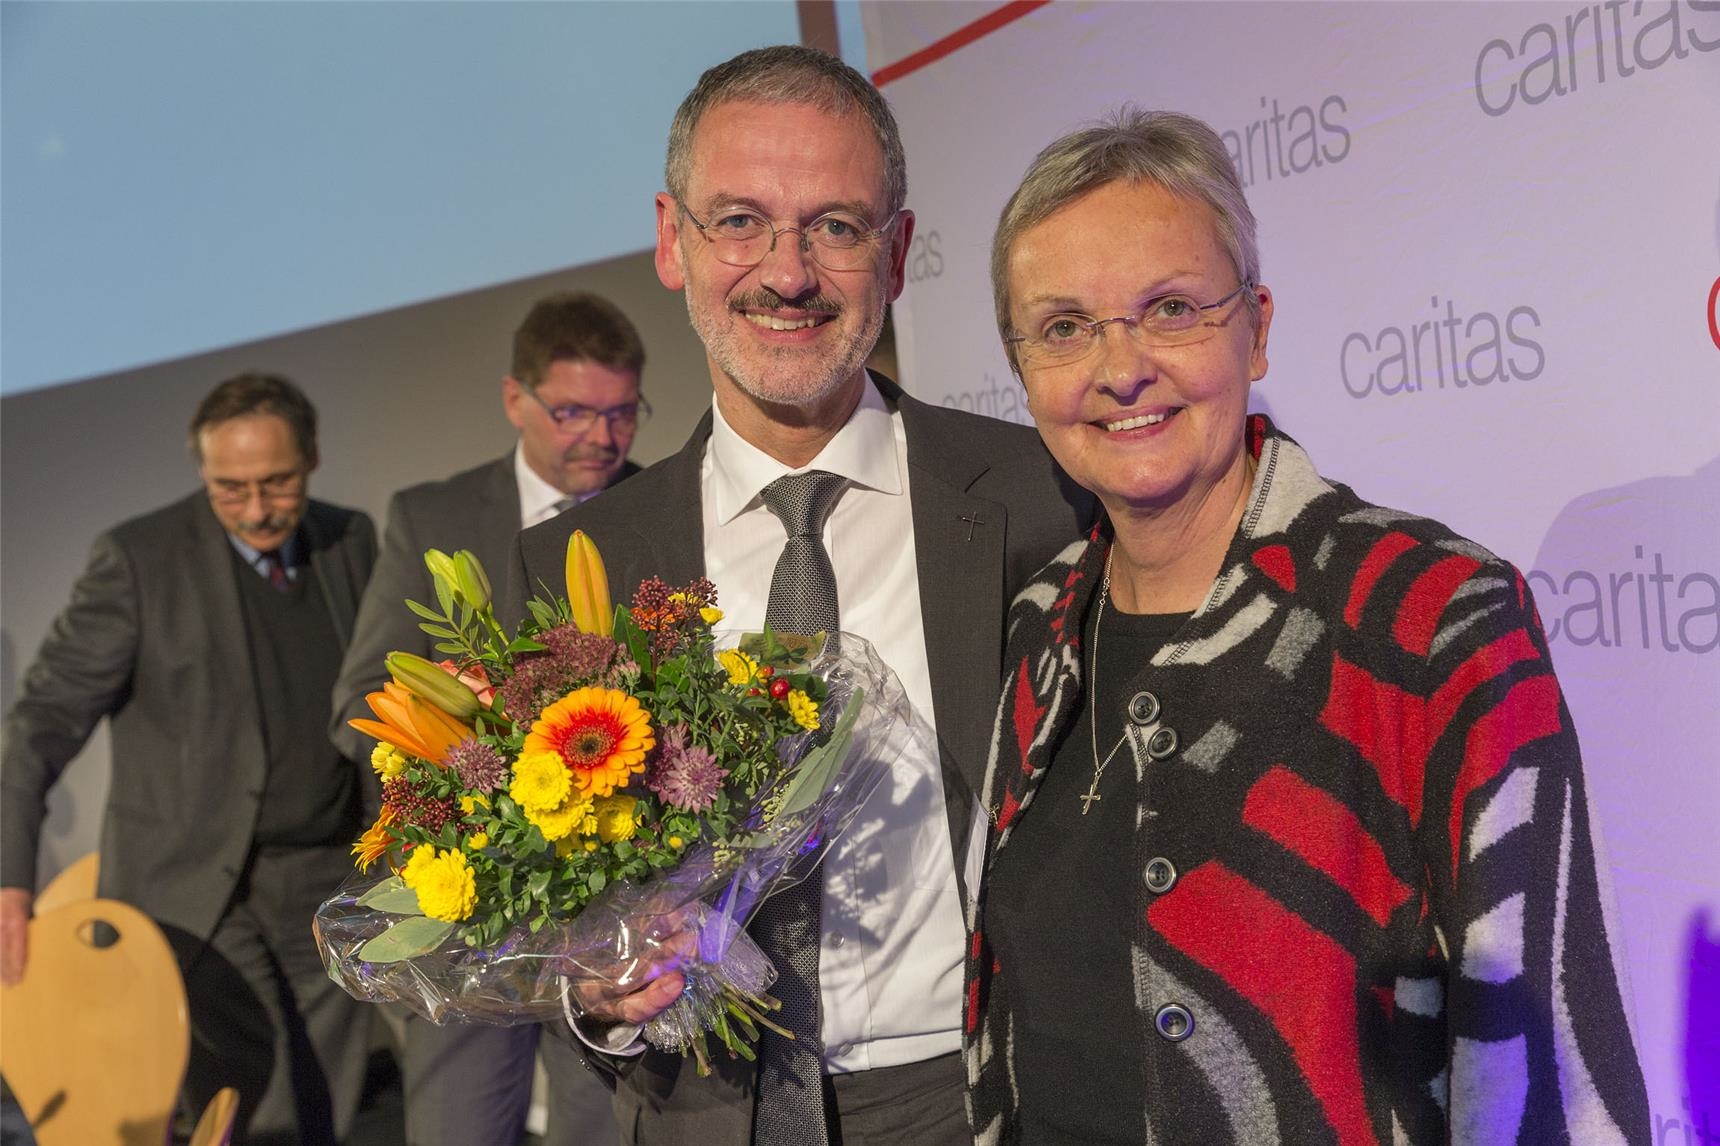 Schwester Edith-Maria Magar gratuliert Präsident Neher zur Wiederwahl (Moosburger/DCV)